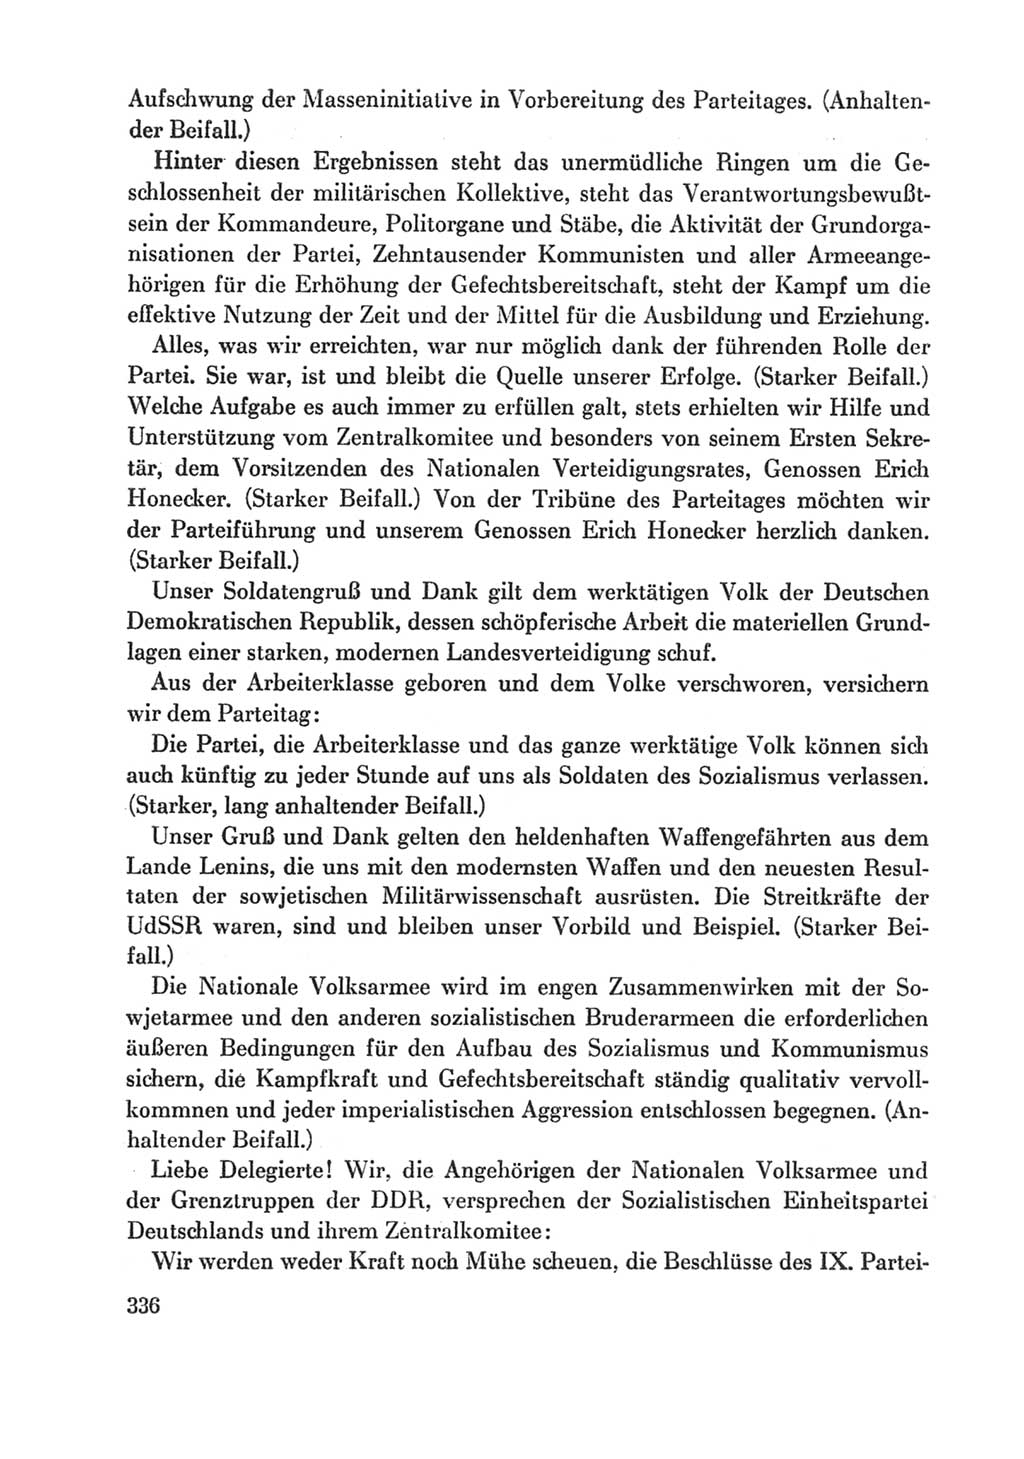 Protokoll der Verhandlungen des Ⅸ. Parteitages der Sozialistischen Einheitspartei Deutschlands (SED) [Deutsche Demokratische Republik (DDR)] 1976, Band 1, Seite 336 (Prot. Verh. Ⅸ. PT SED DDR 1976, Bd. 1, S. 336)